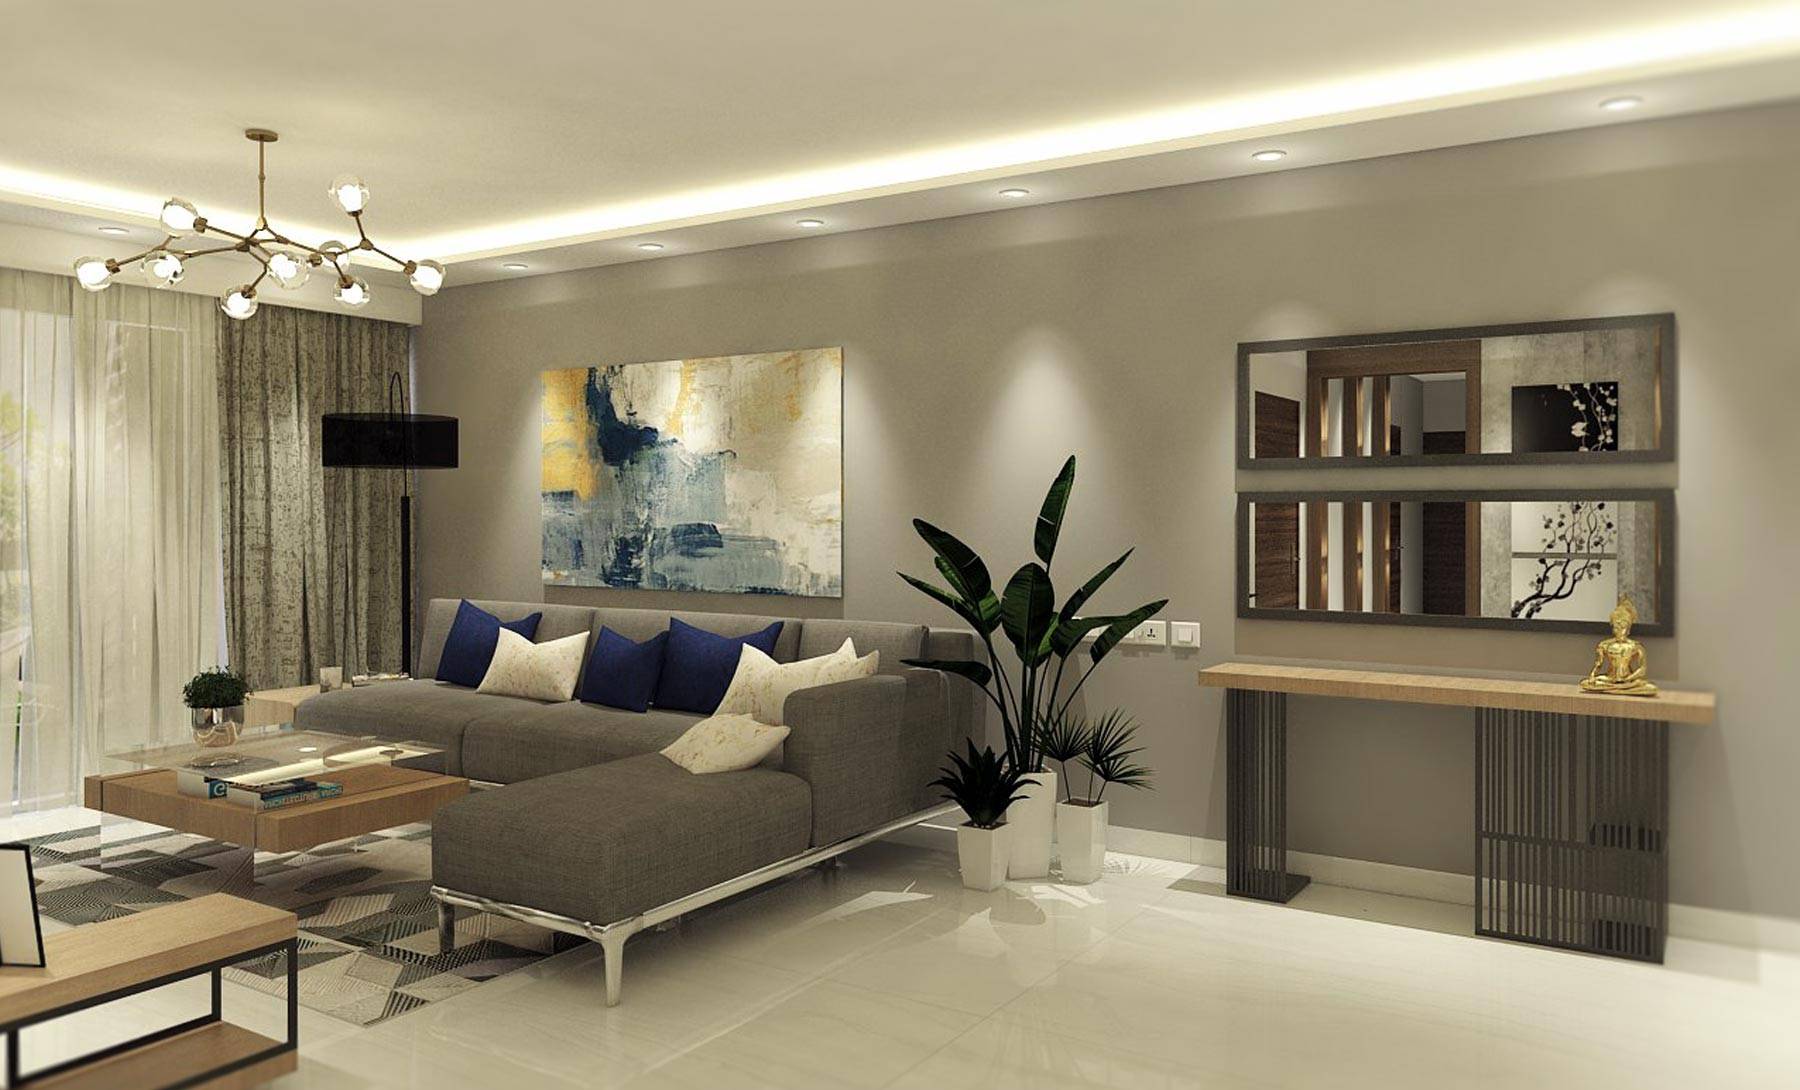 Kyrah Design, Living Room Interior Design